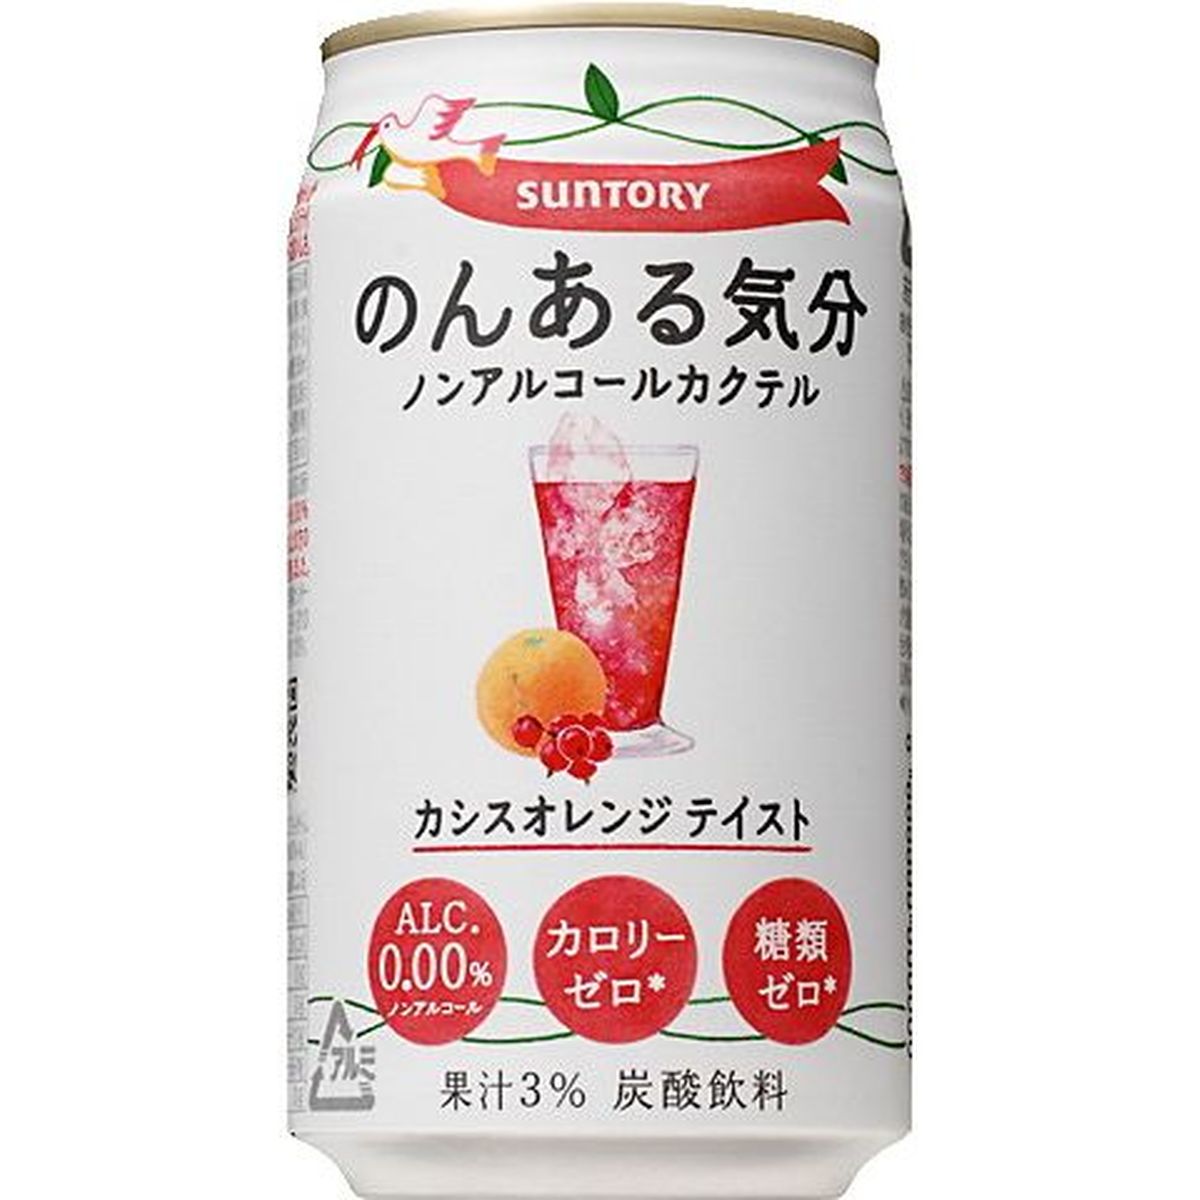 【24個入リ】サントリー ノンアル気分 カシスオレンジ 350ml